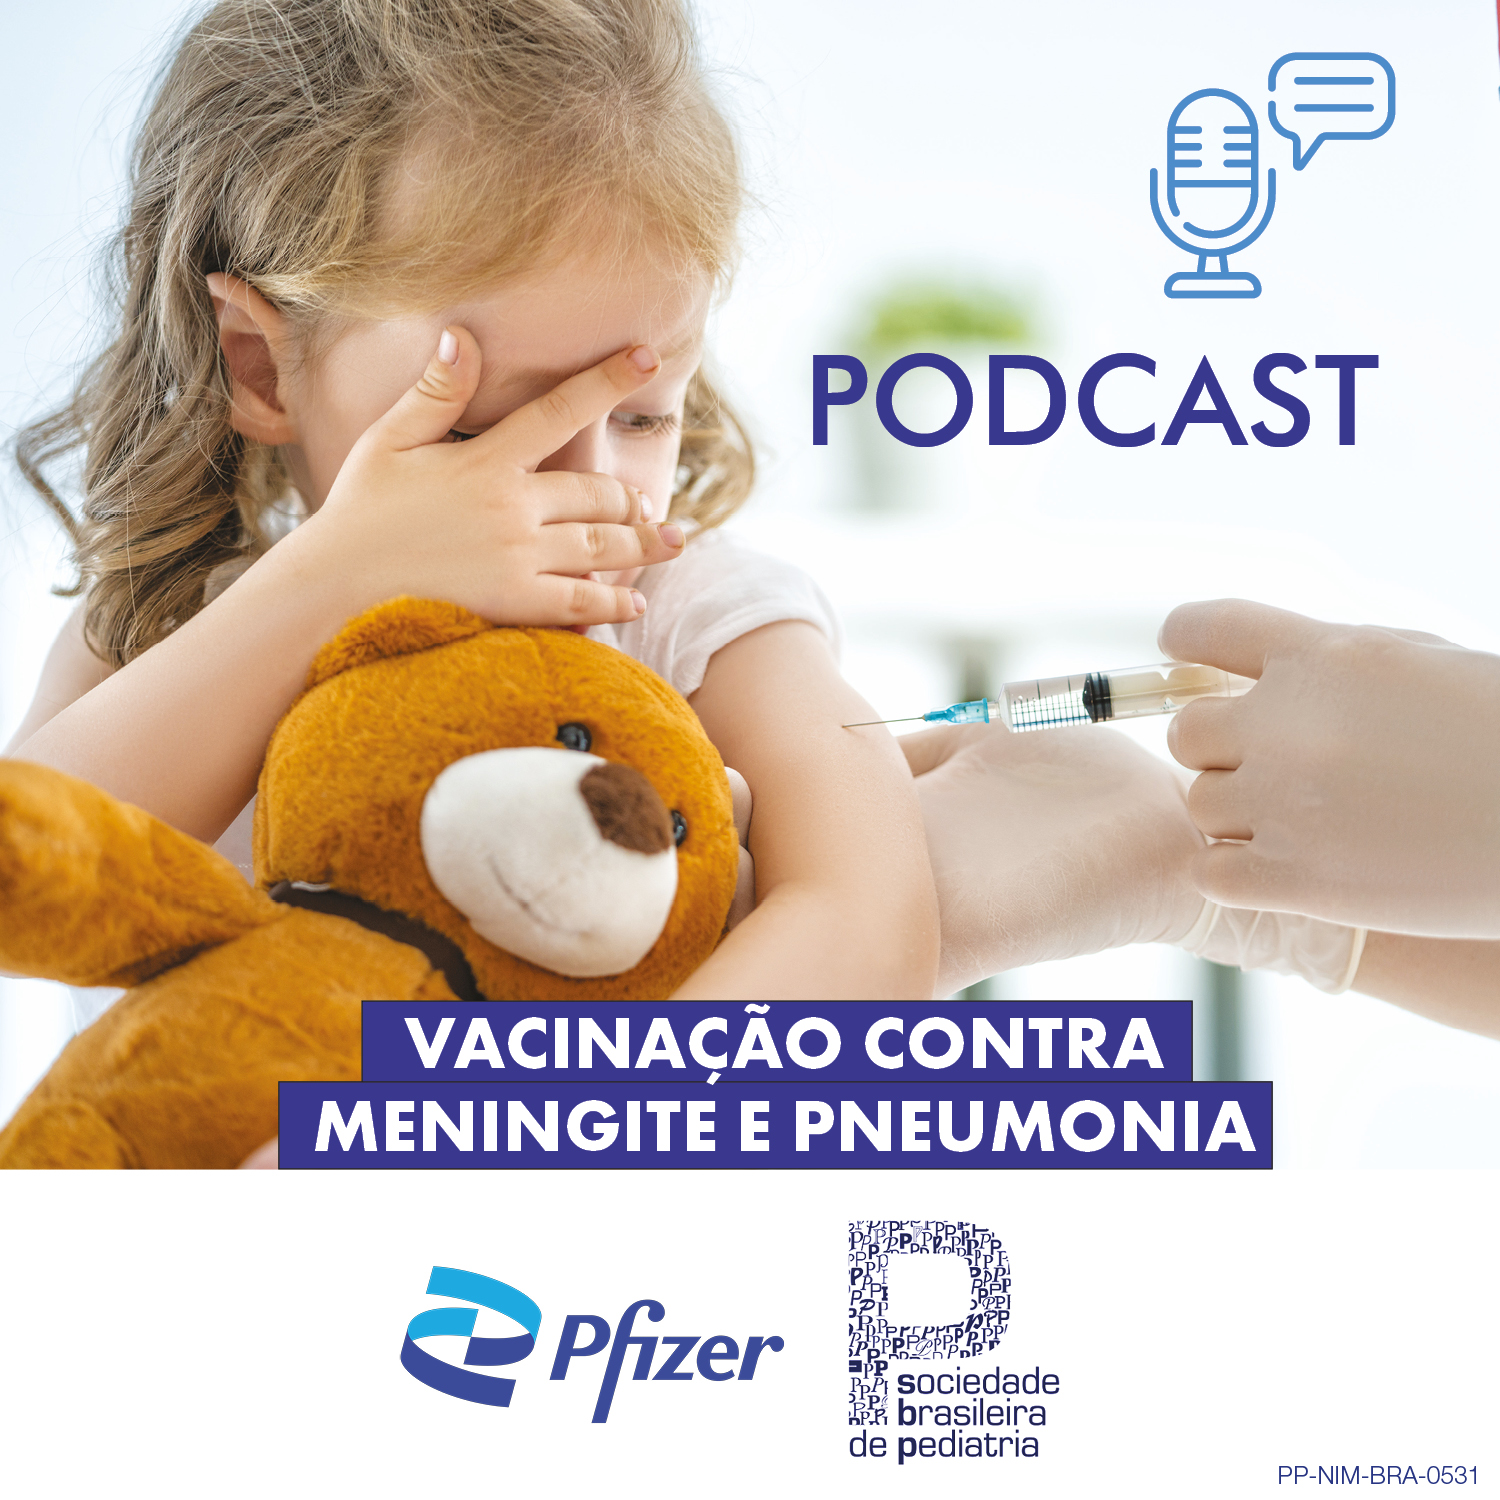 Conteúdo patrocinado: Vacinação contra meningite e pneumonia